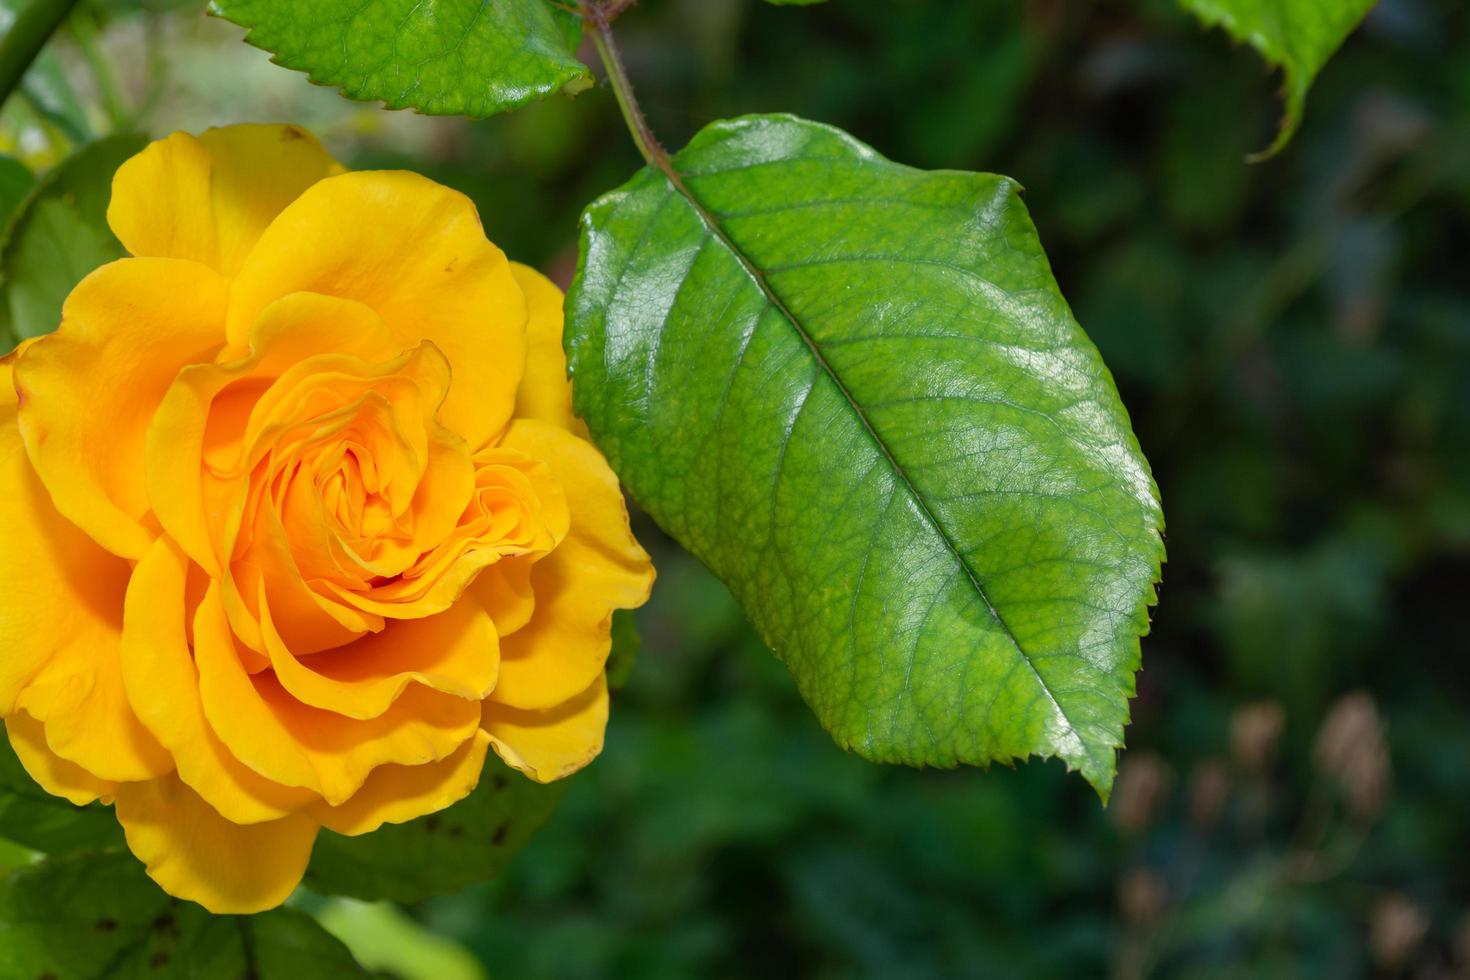 gul ros i trädgården foto